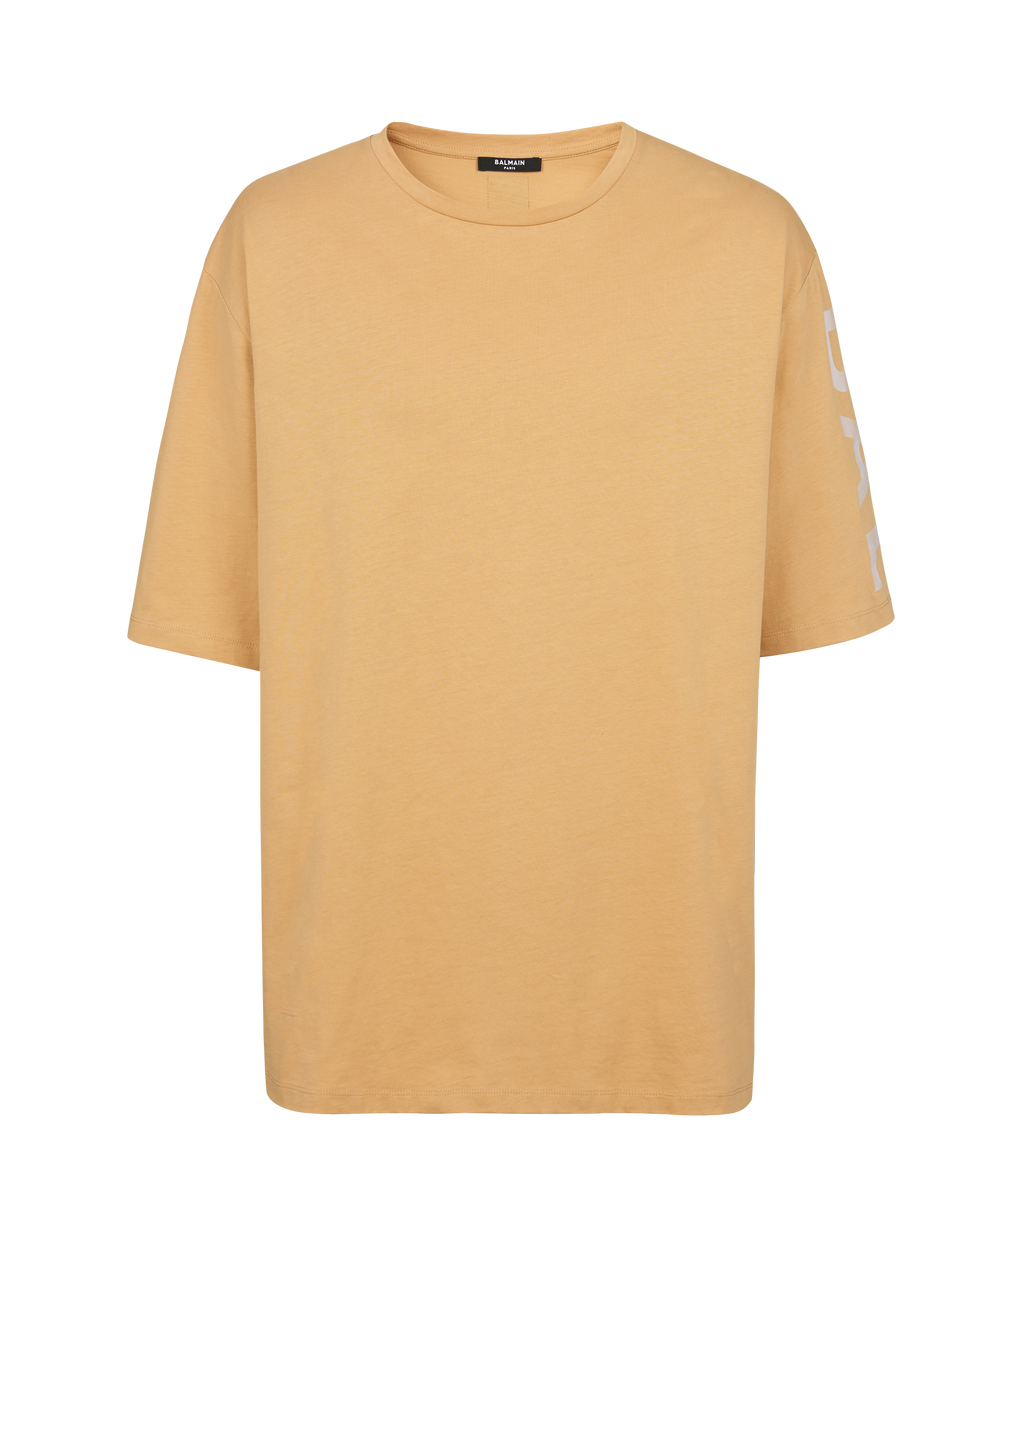 Oversized cotton T-shirt with Balmain logo, brown, hi-res